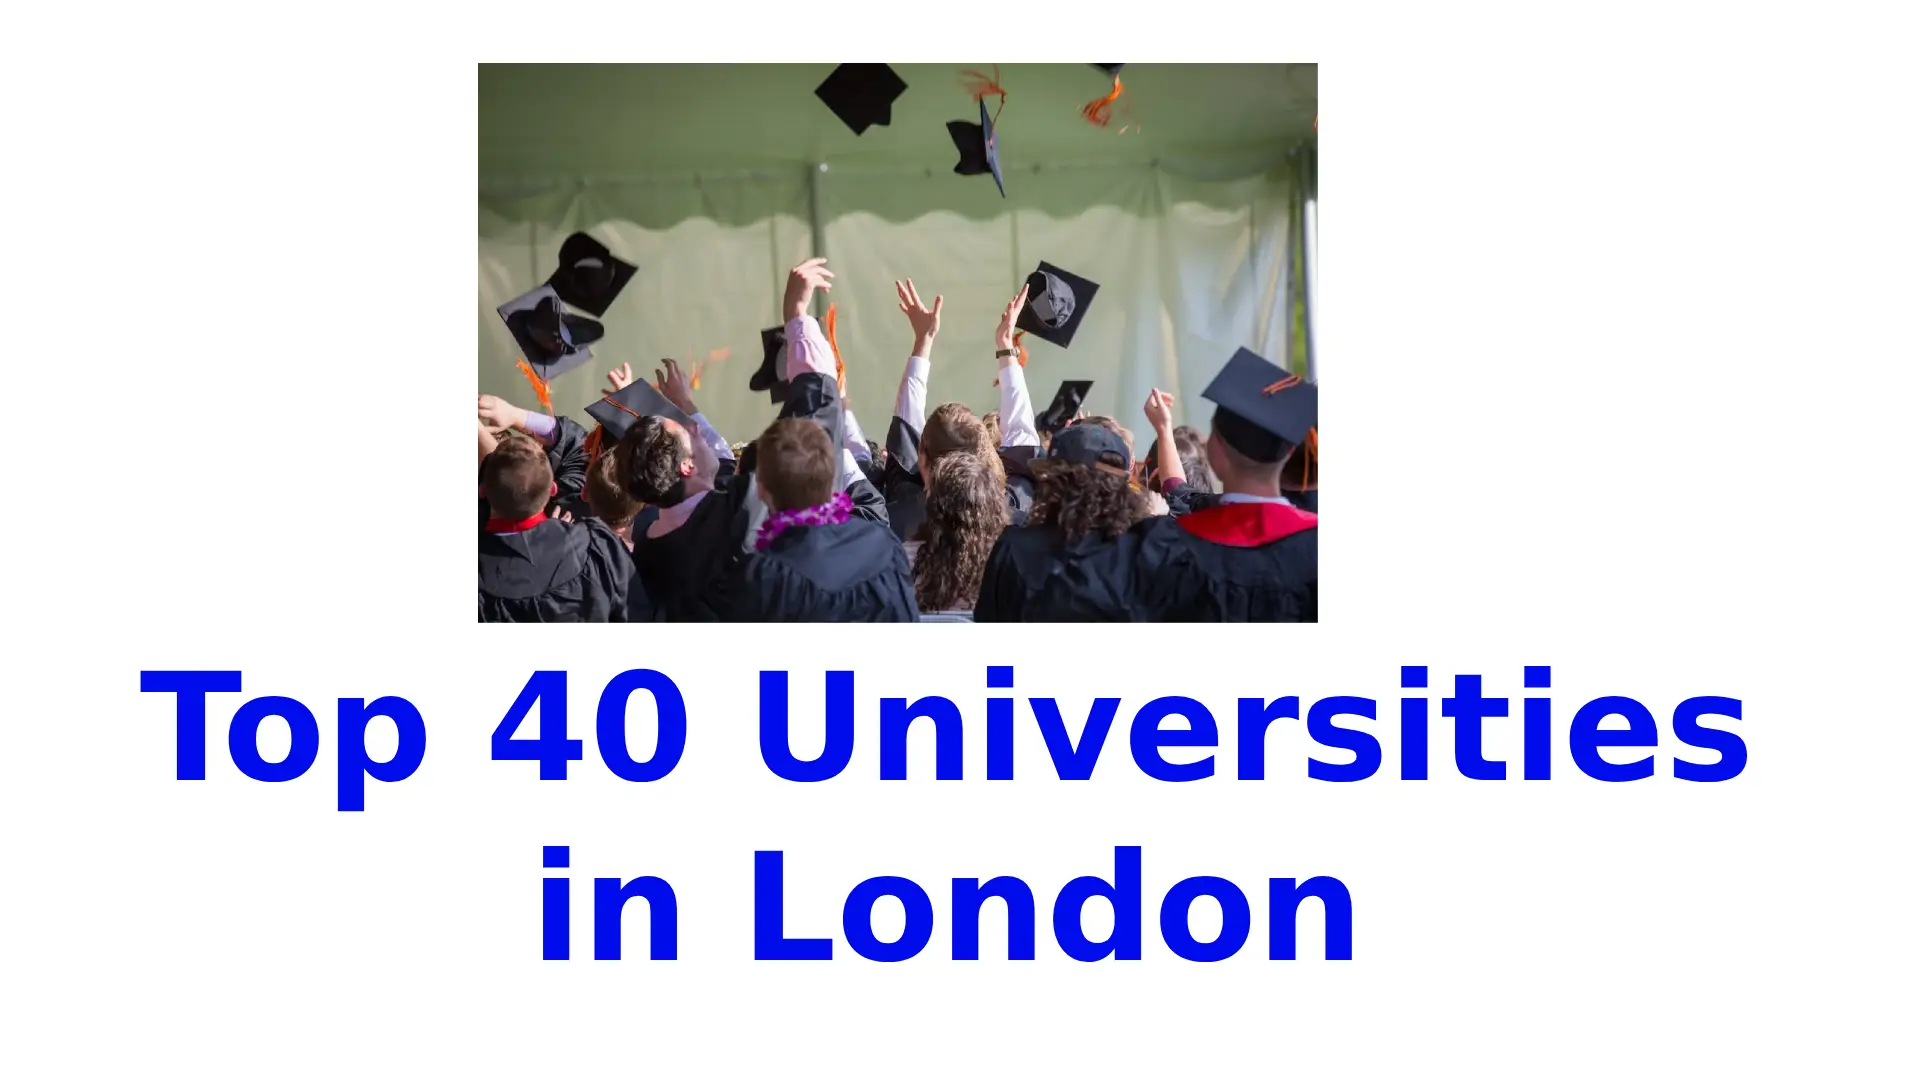 Top 40 Universities in London